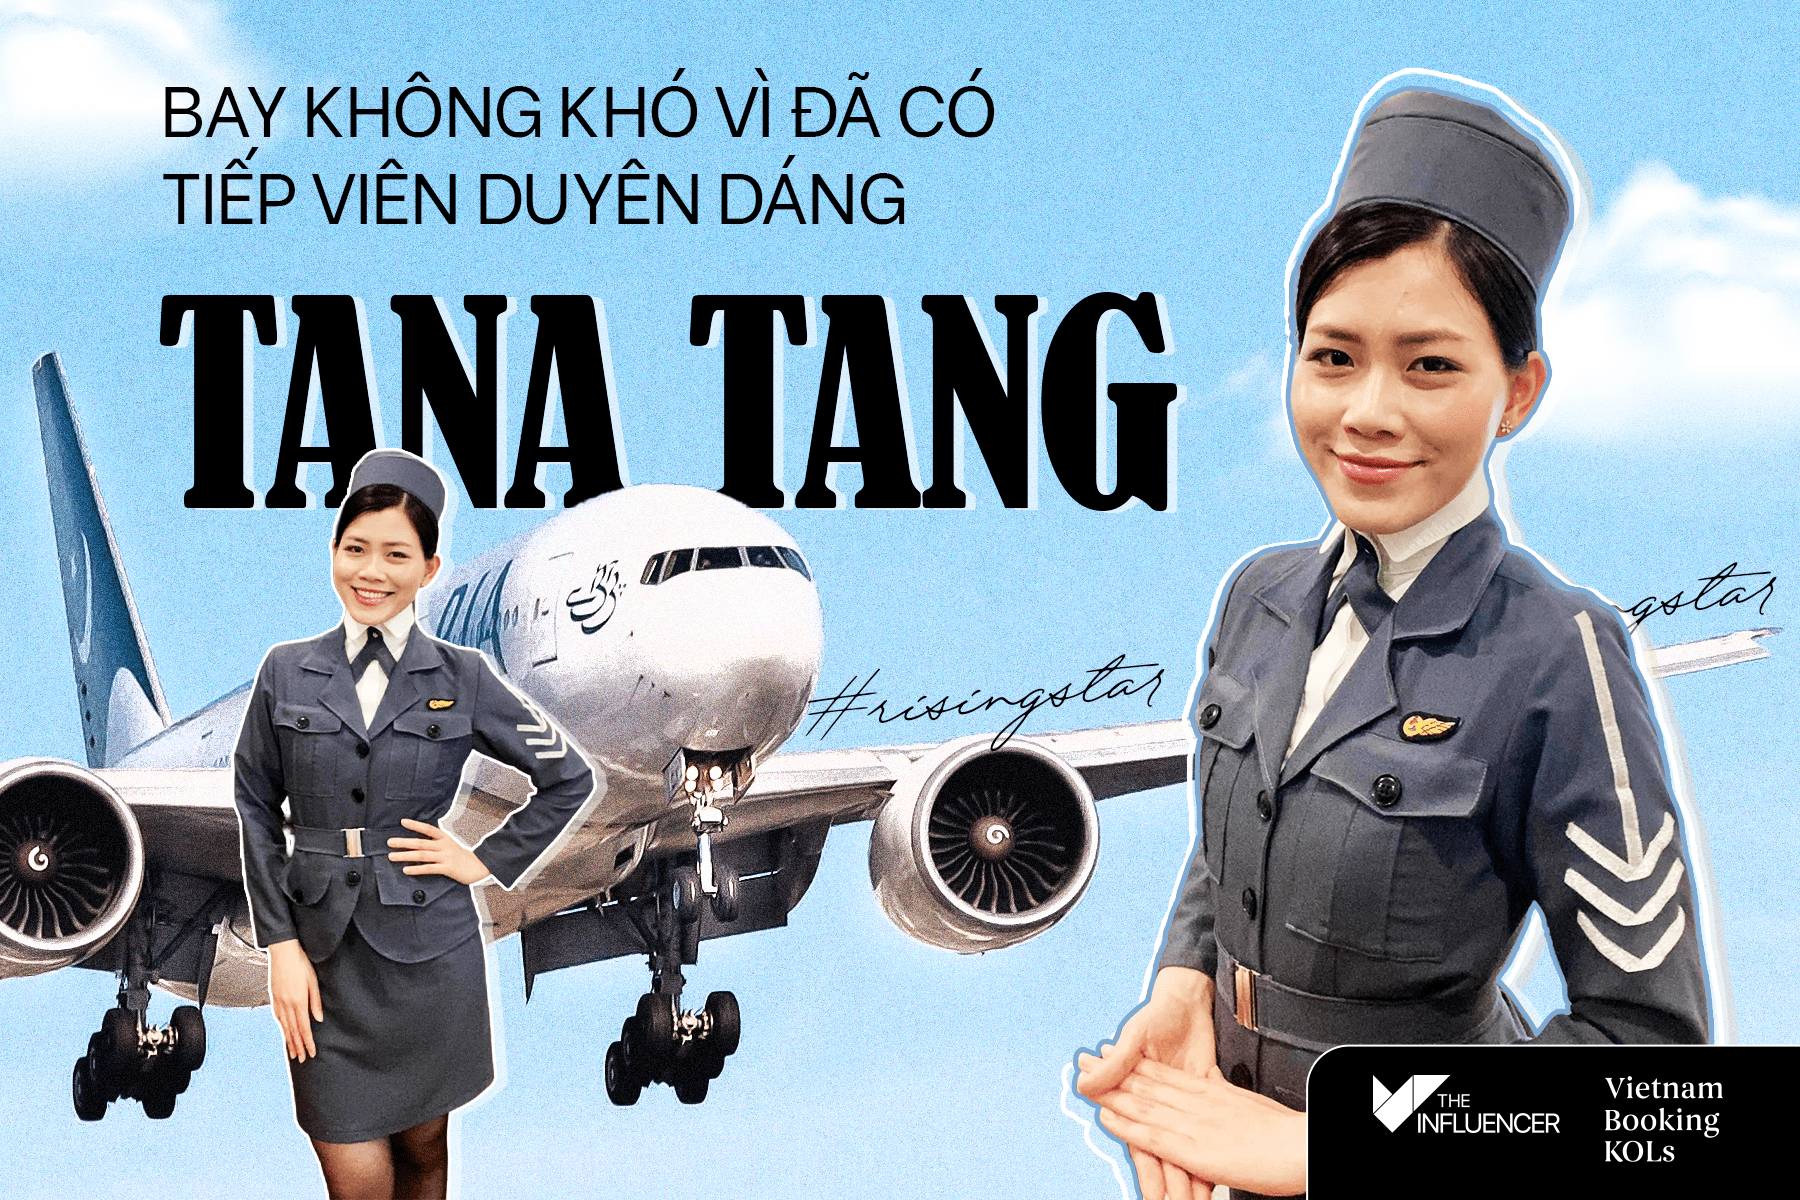 #Risingstar: Bay không khó vì đã có tiếp viên duyên dáng Tana Tang